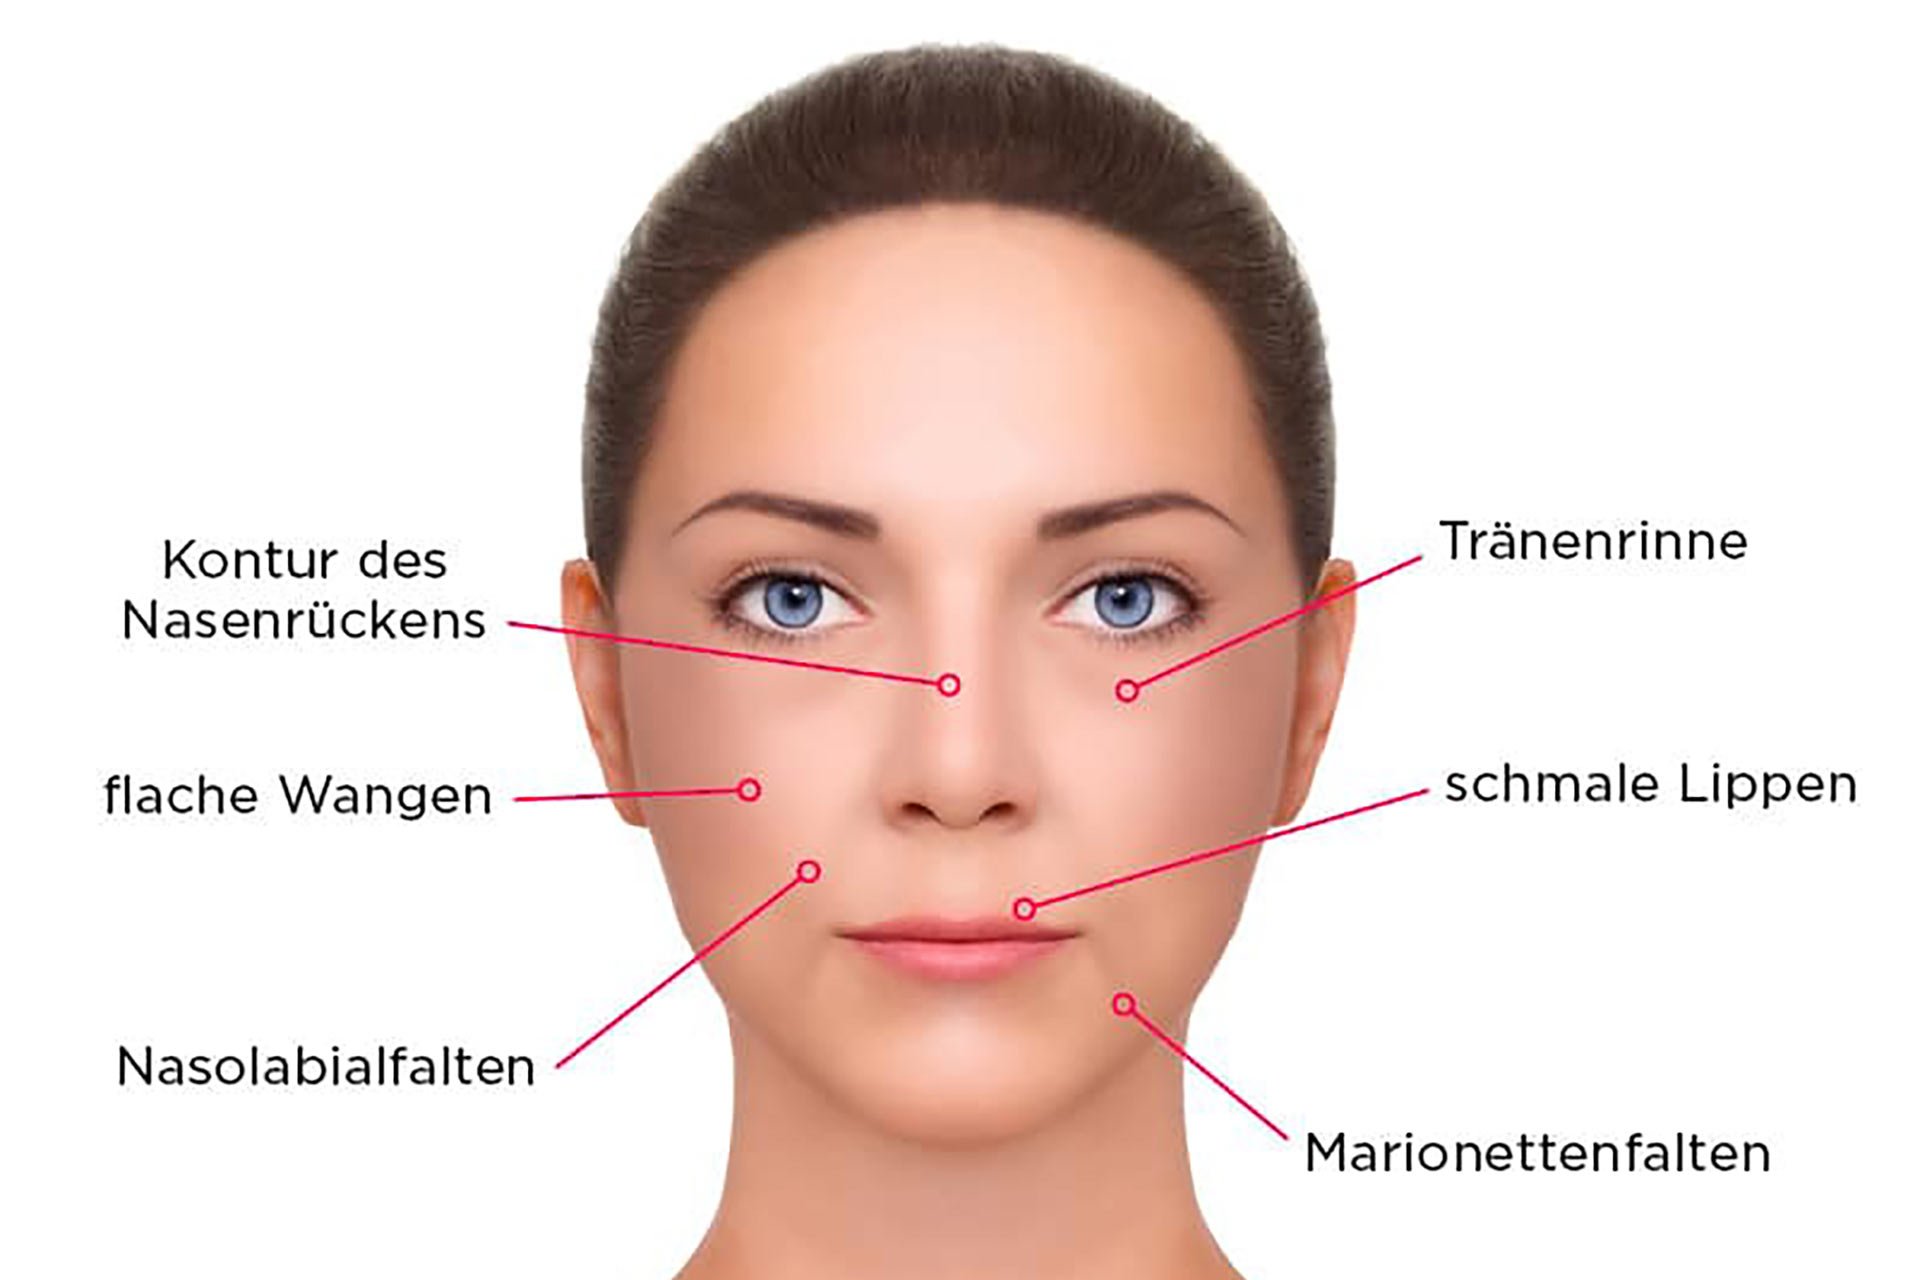 Weelche Bereiche im Gesicht können unterspritzt werden